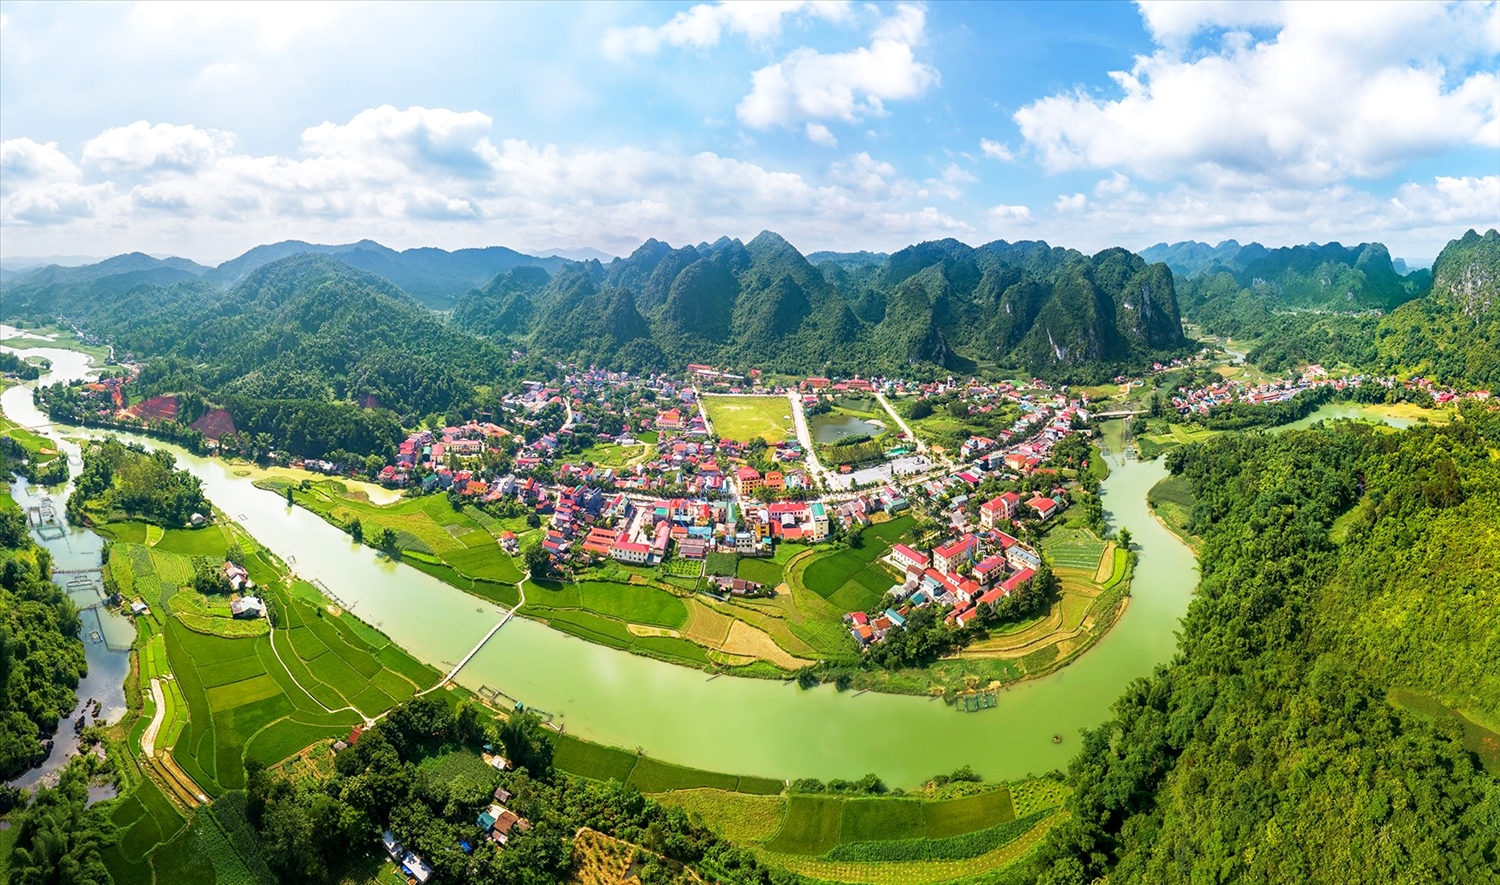 Hiện nay, quy hoạch phát triển kinh tế - xã hội của huyện Văn Quan đã được tích hợp vào quy hoạch tỉnh Lạng Sơn năm 2030